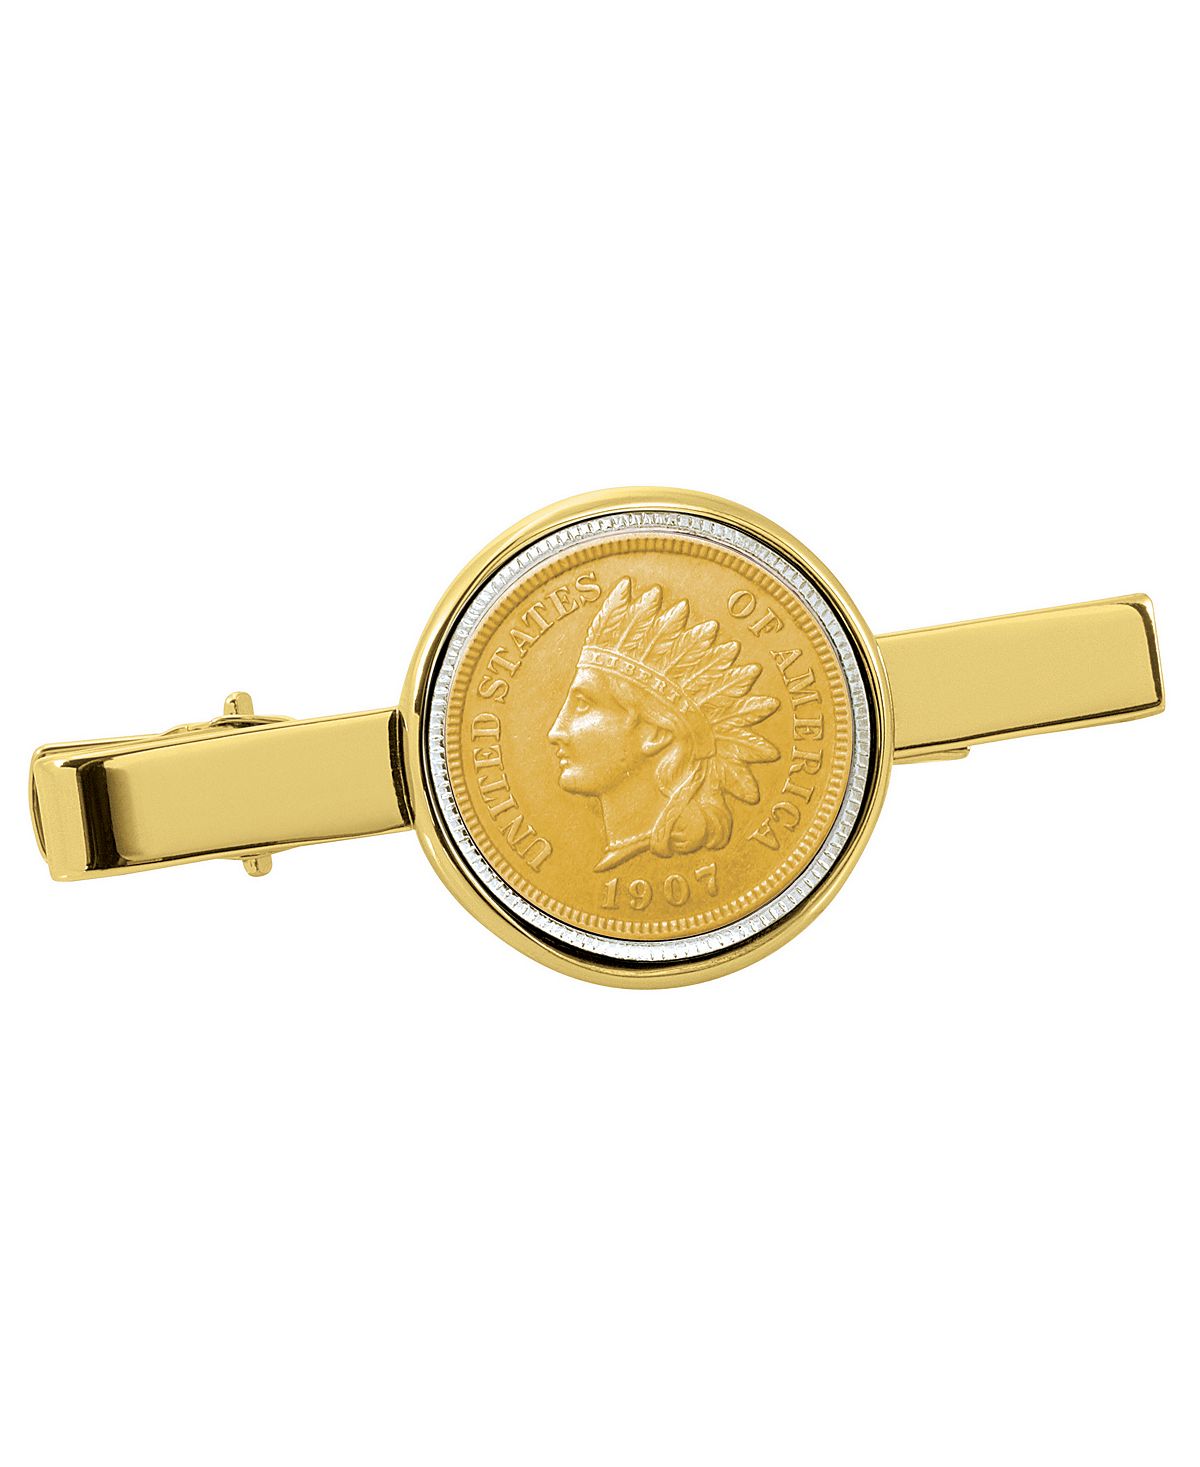 Позолоченный зажим для галстука в виде индийской монеты пенни American Coin Treasures twelve constellation lucky gold coin aries commemorative coin